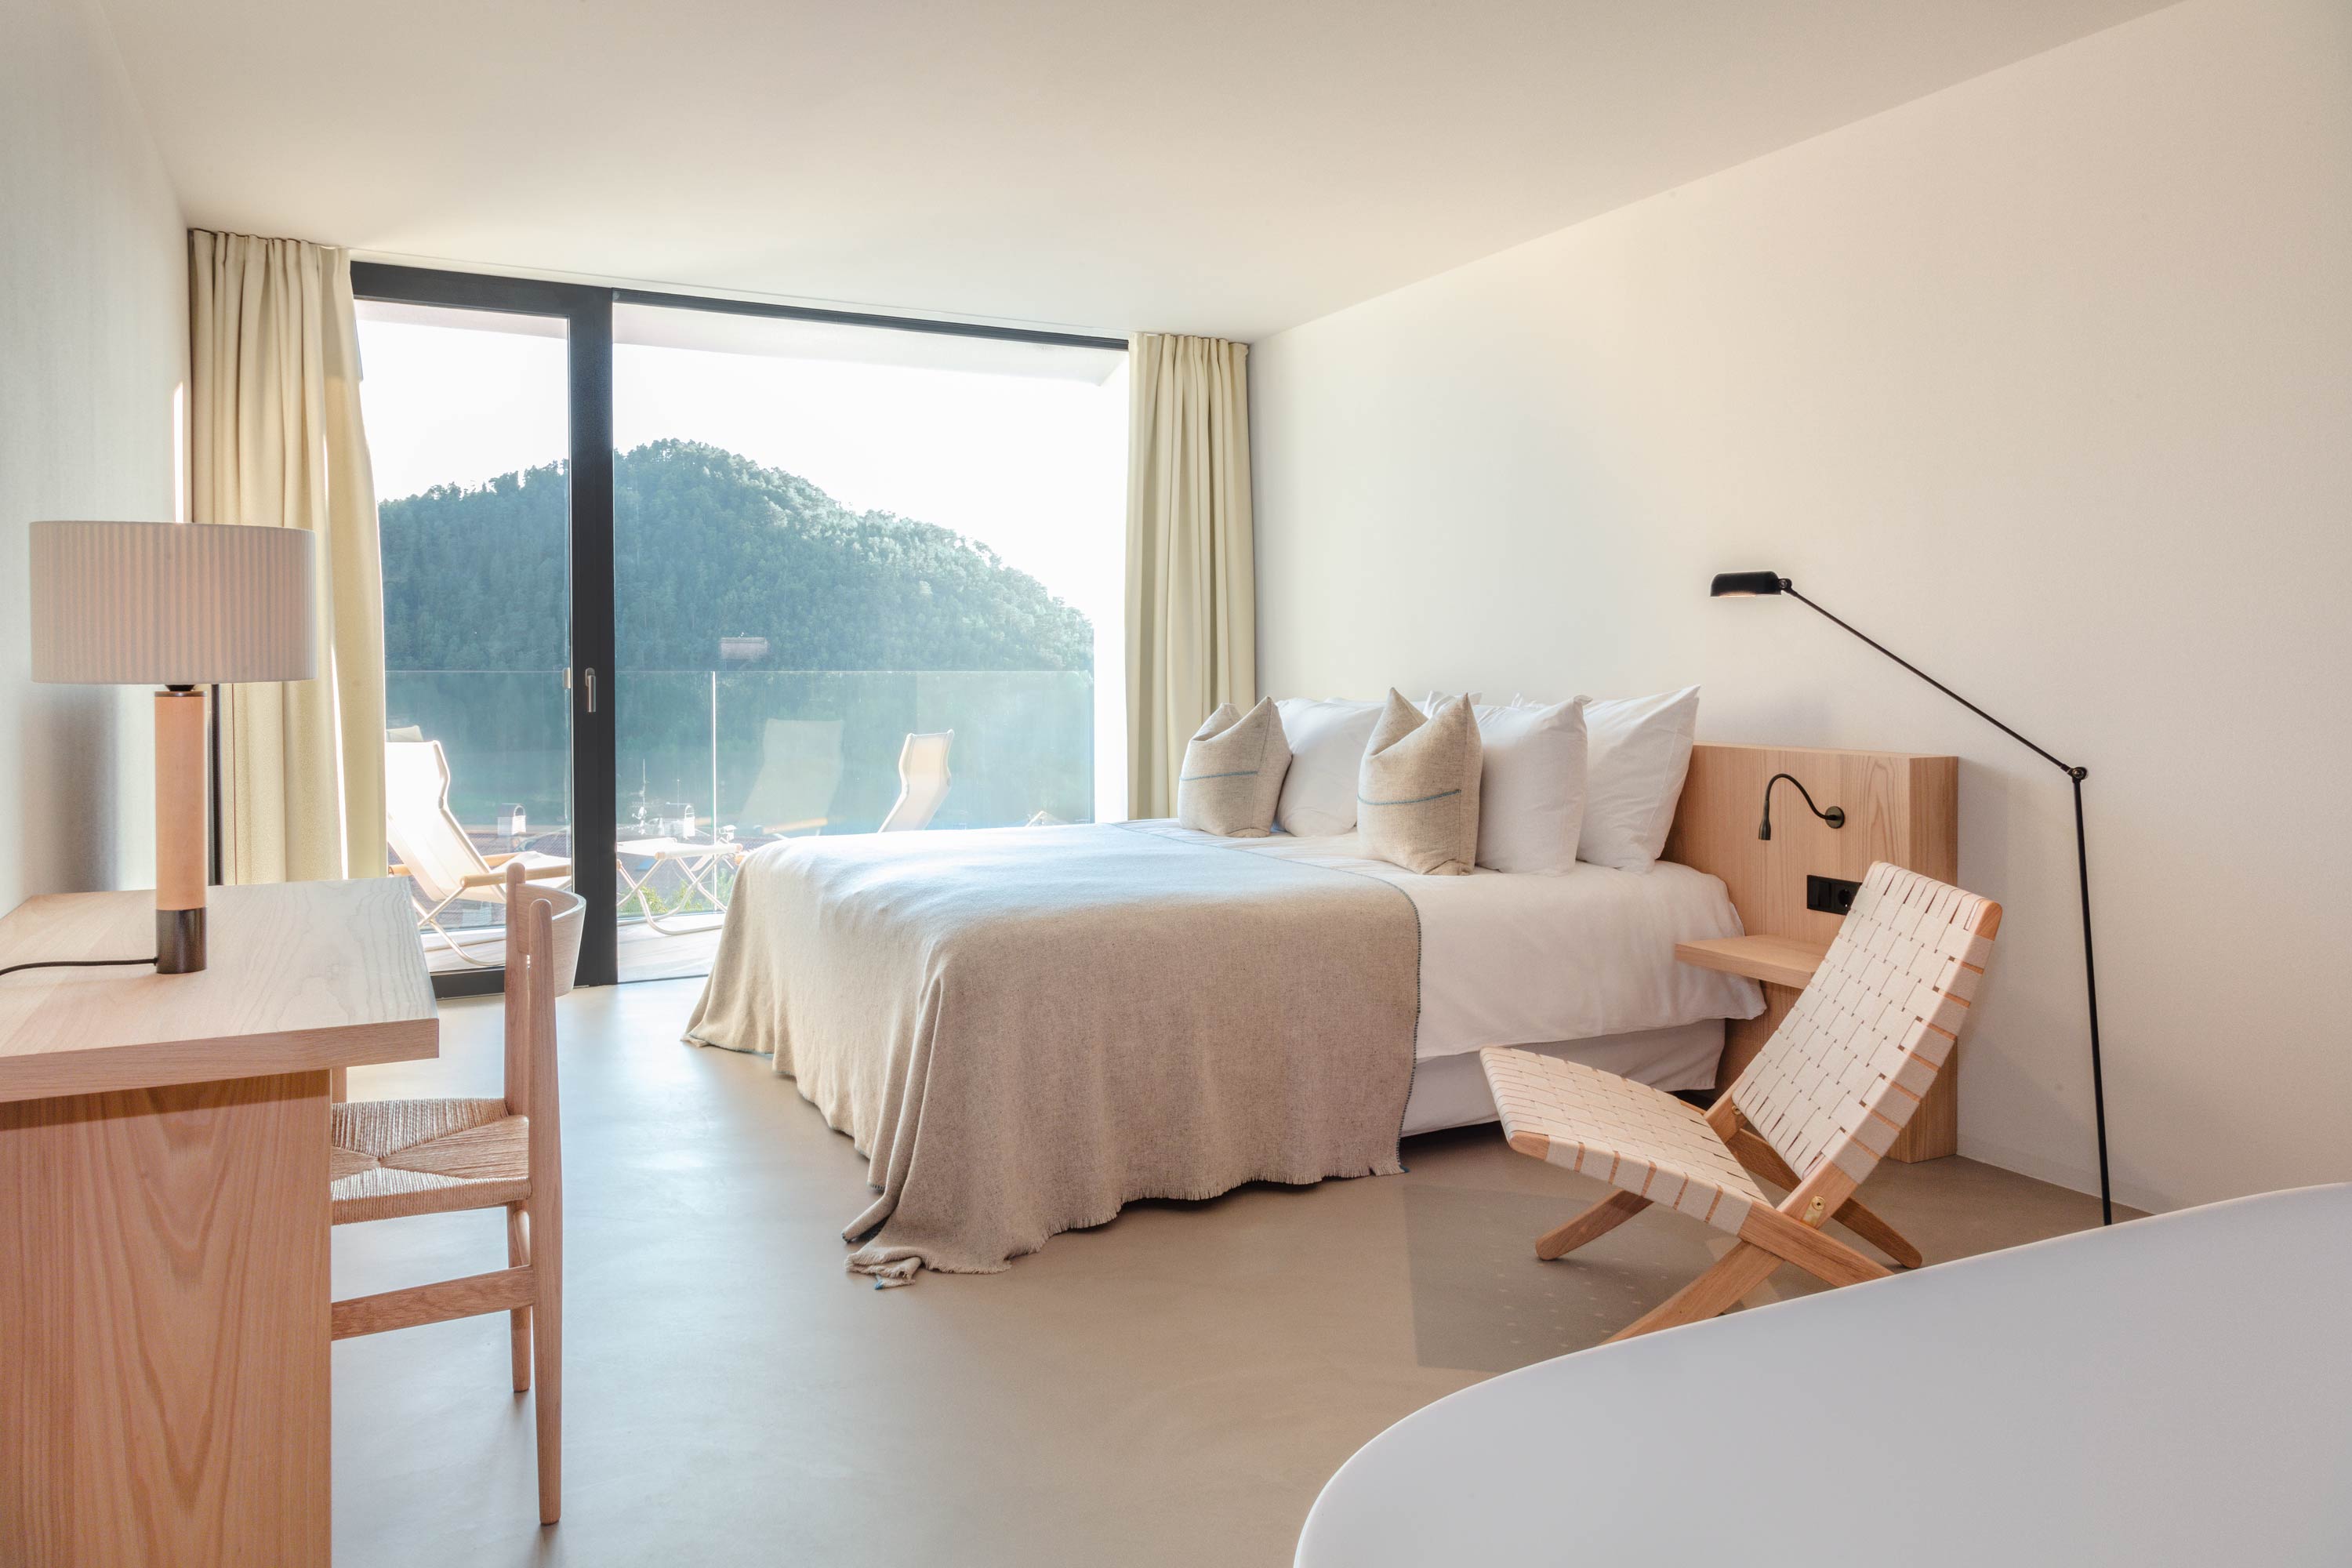 Die Zimmer mit Bergblick im Hotel Schgaguler in den DolomitenBesten Komfort durch handgefertigte Einrichtung und wohnliches Ambiente im Hotel Schgaguler in Südtirol